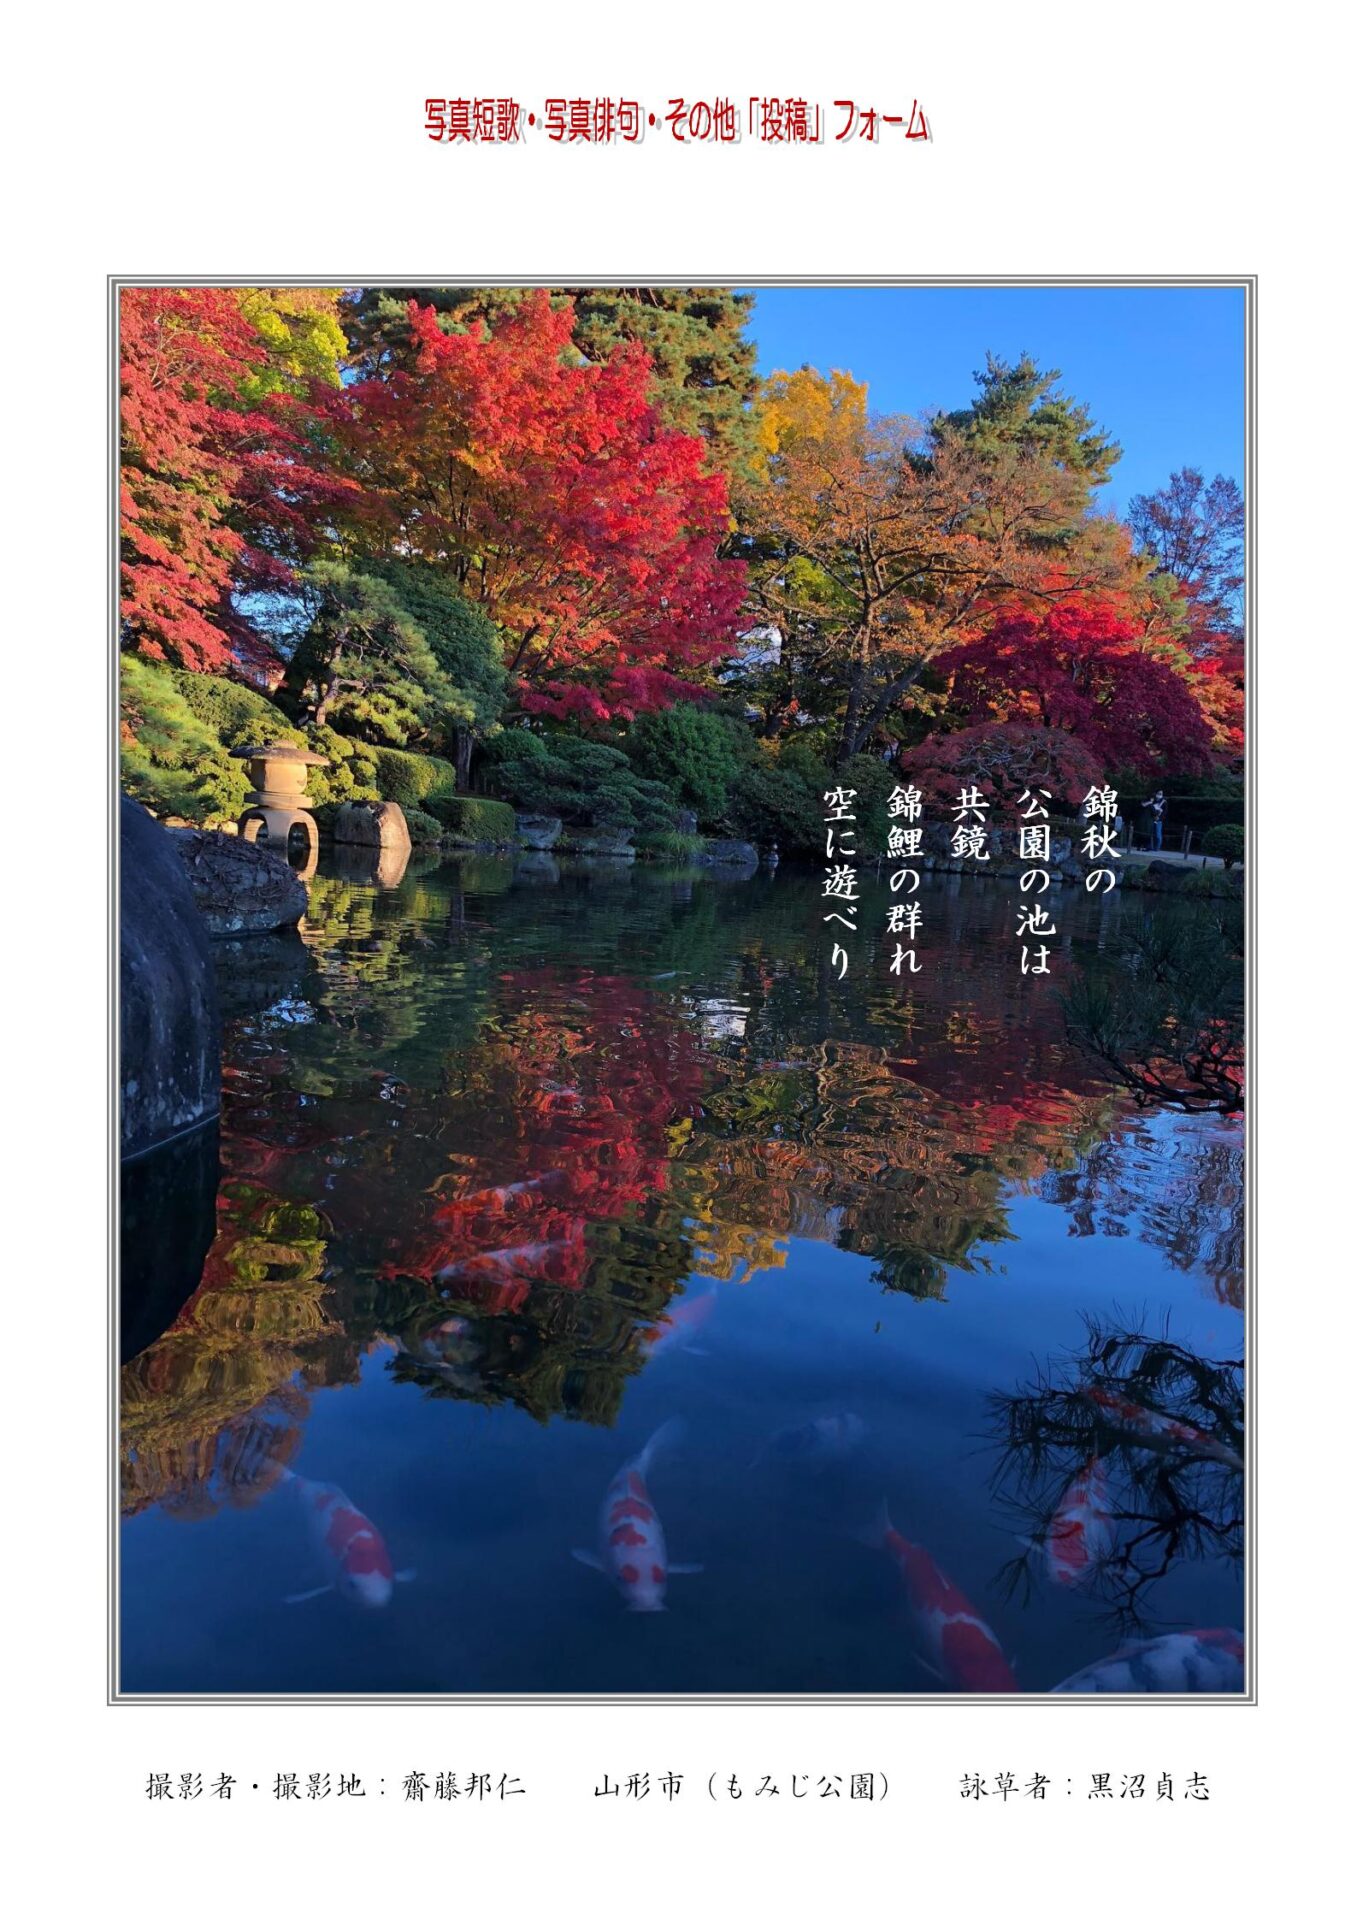 作品番号-２７（共同制作写真短歌）：錦秋の公園の池は共鏡錦鯉の群れ空に遊べり